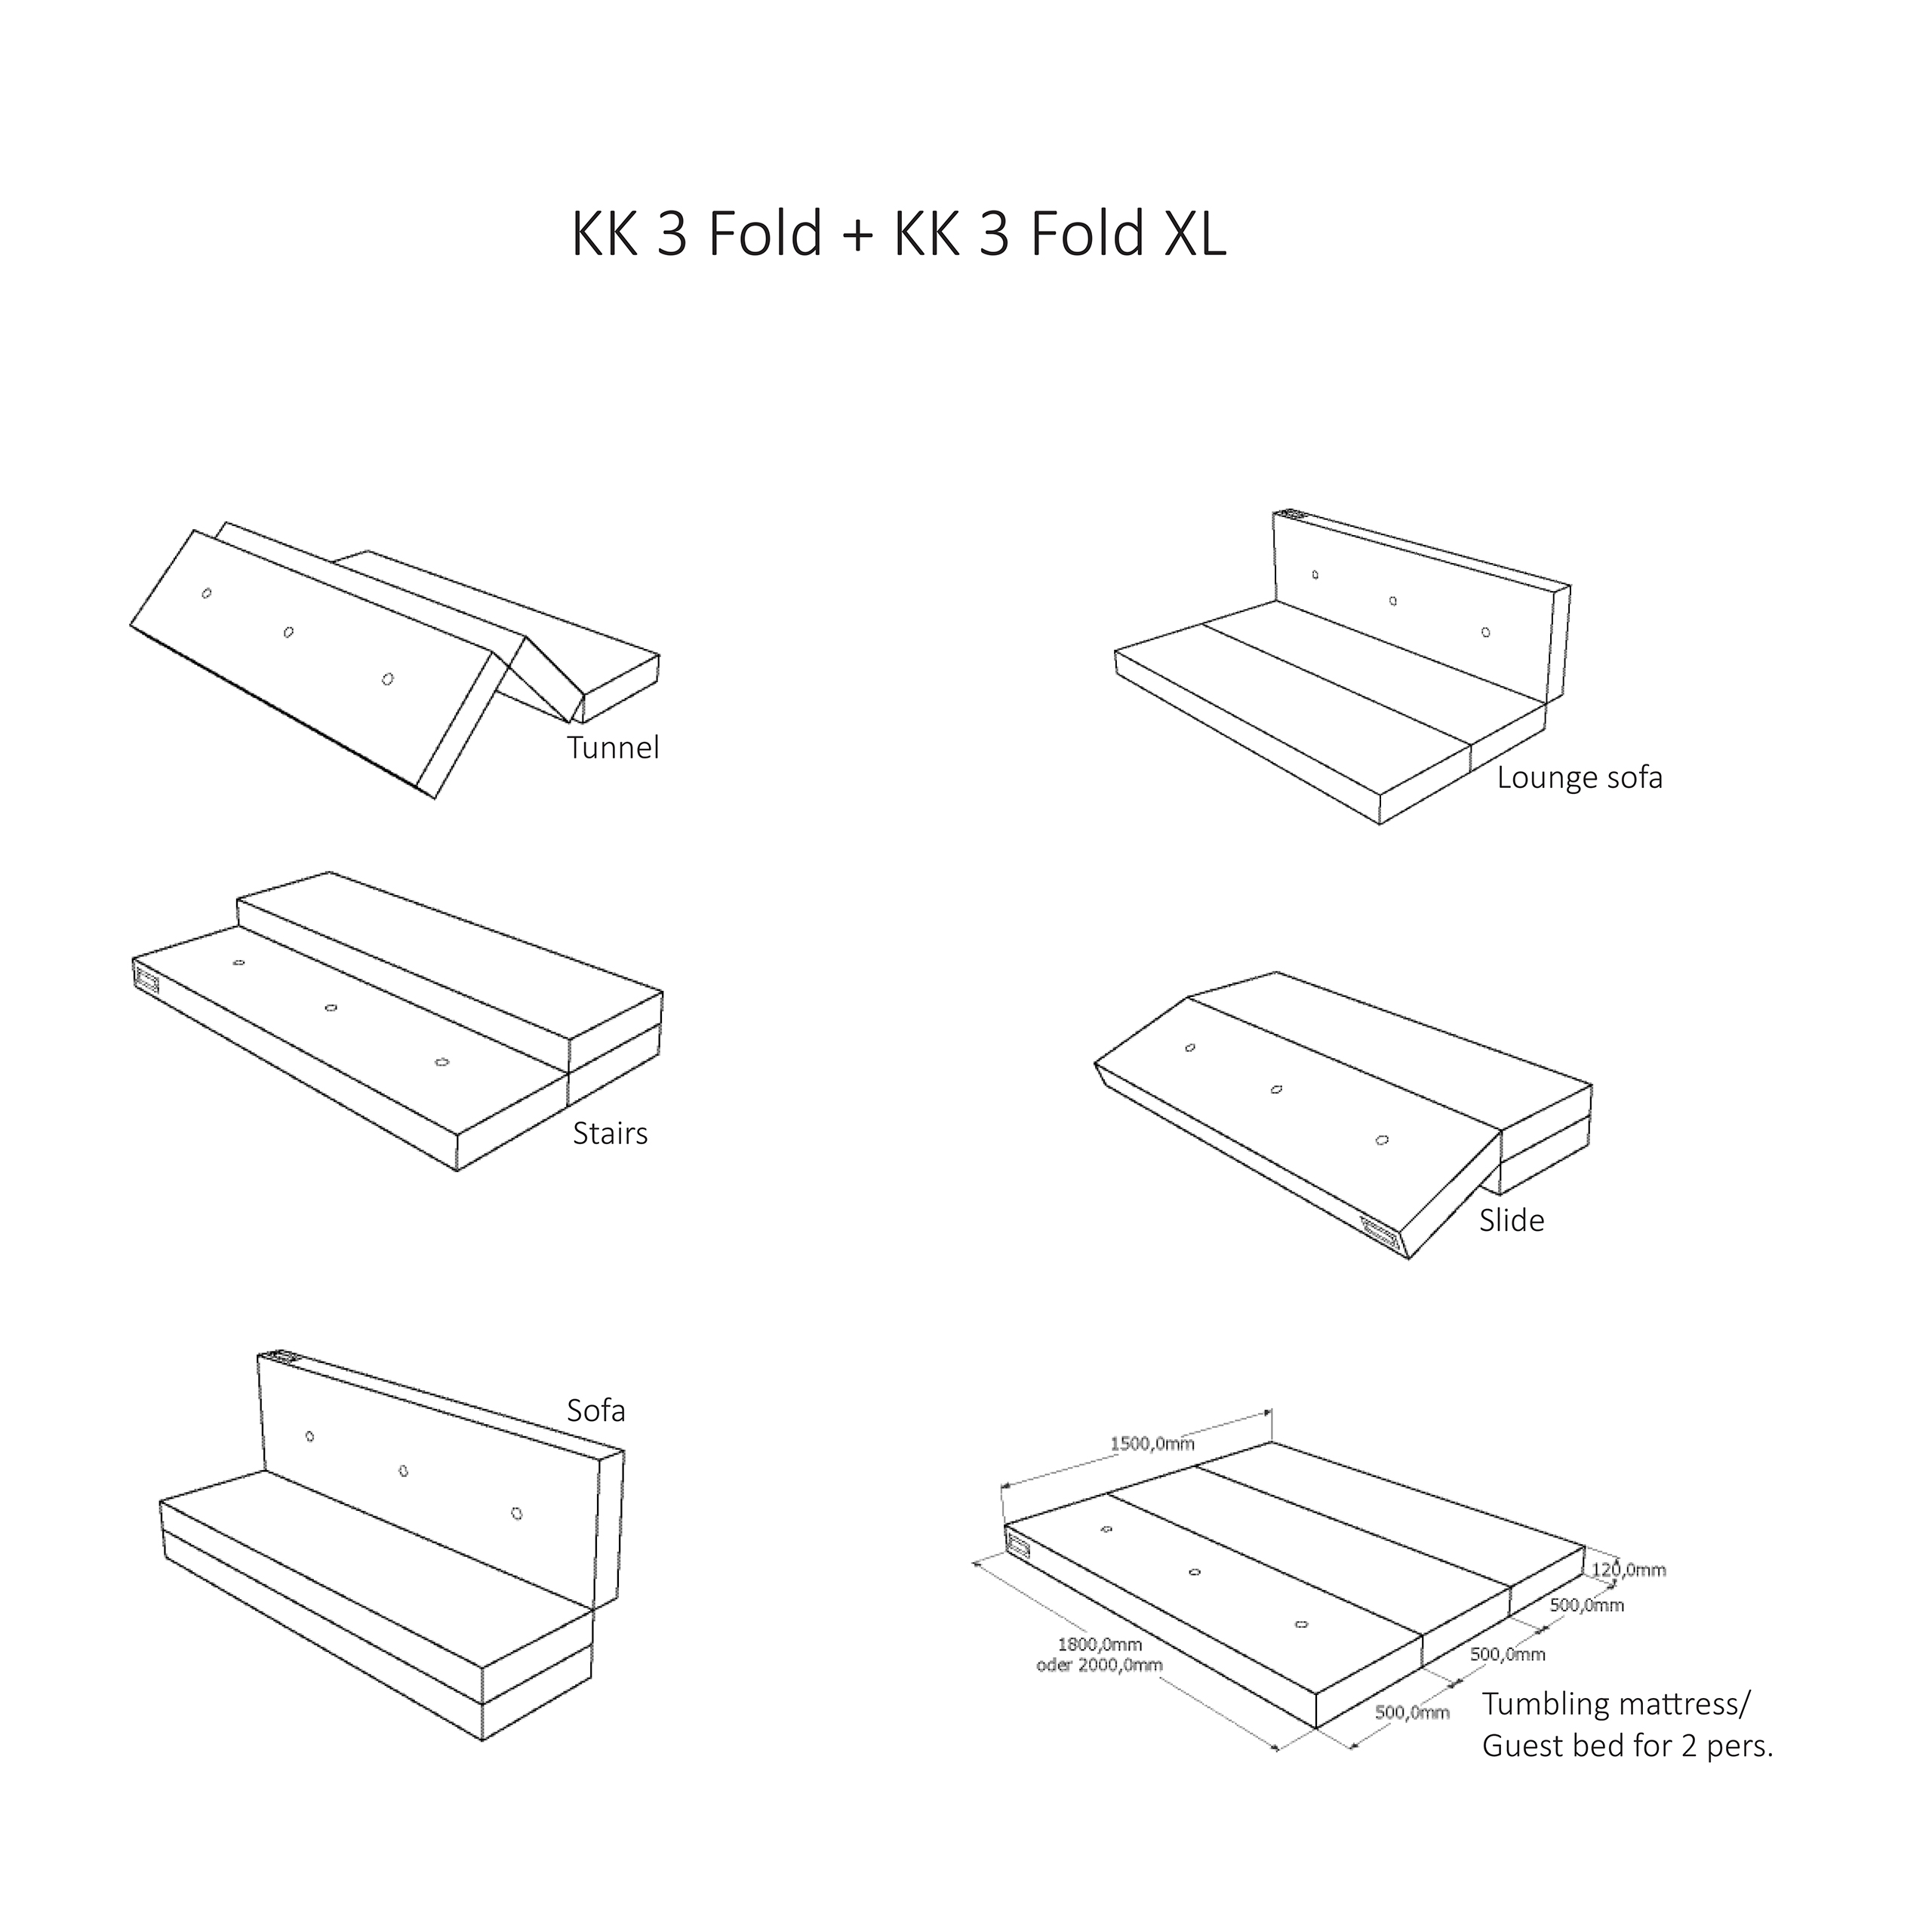 Klapp-Matratze "KK 3 Fold XL" (200 cm) - Multi Grey / Grey